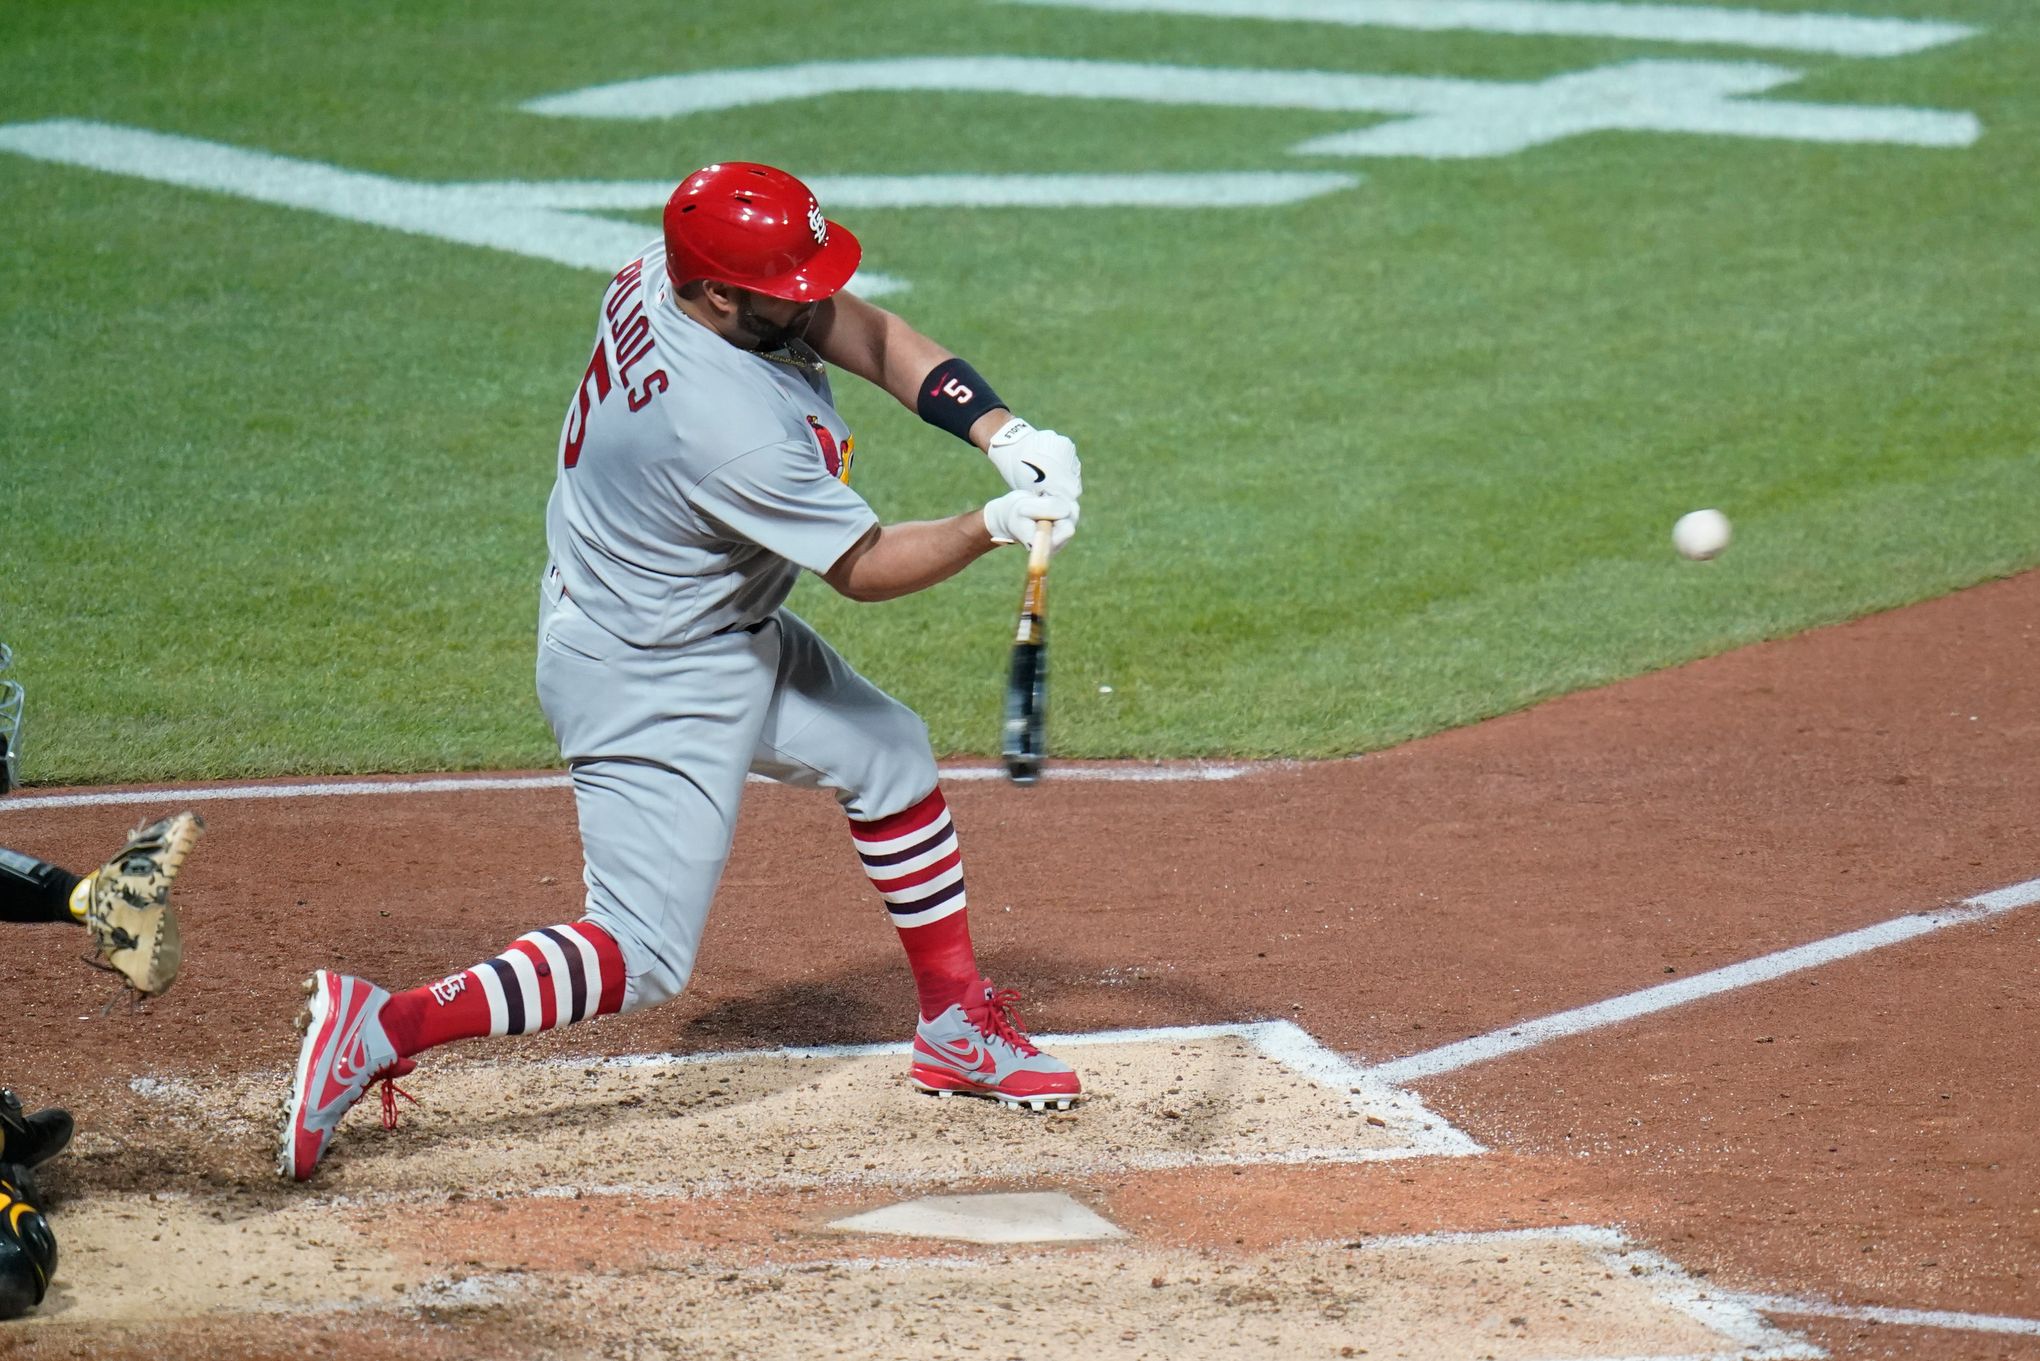 Pujols Hits 700th Home Run, Joining Baseball Greats